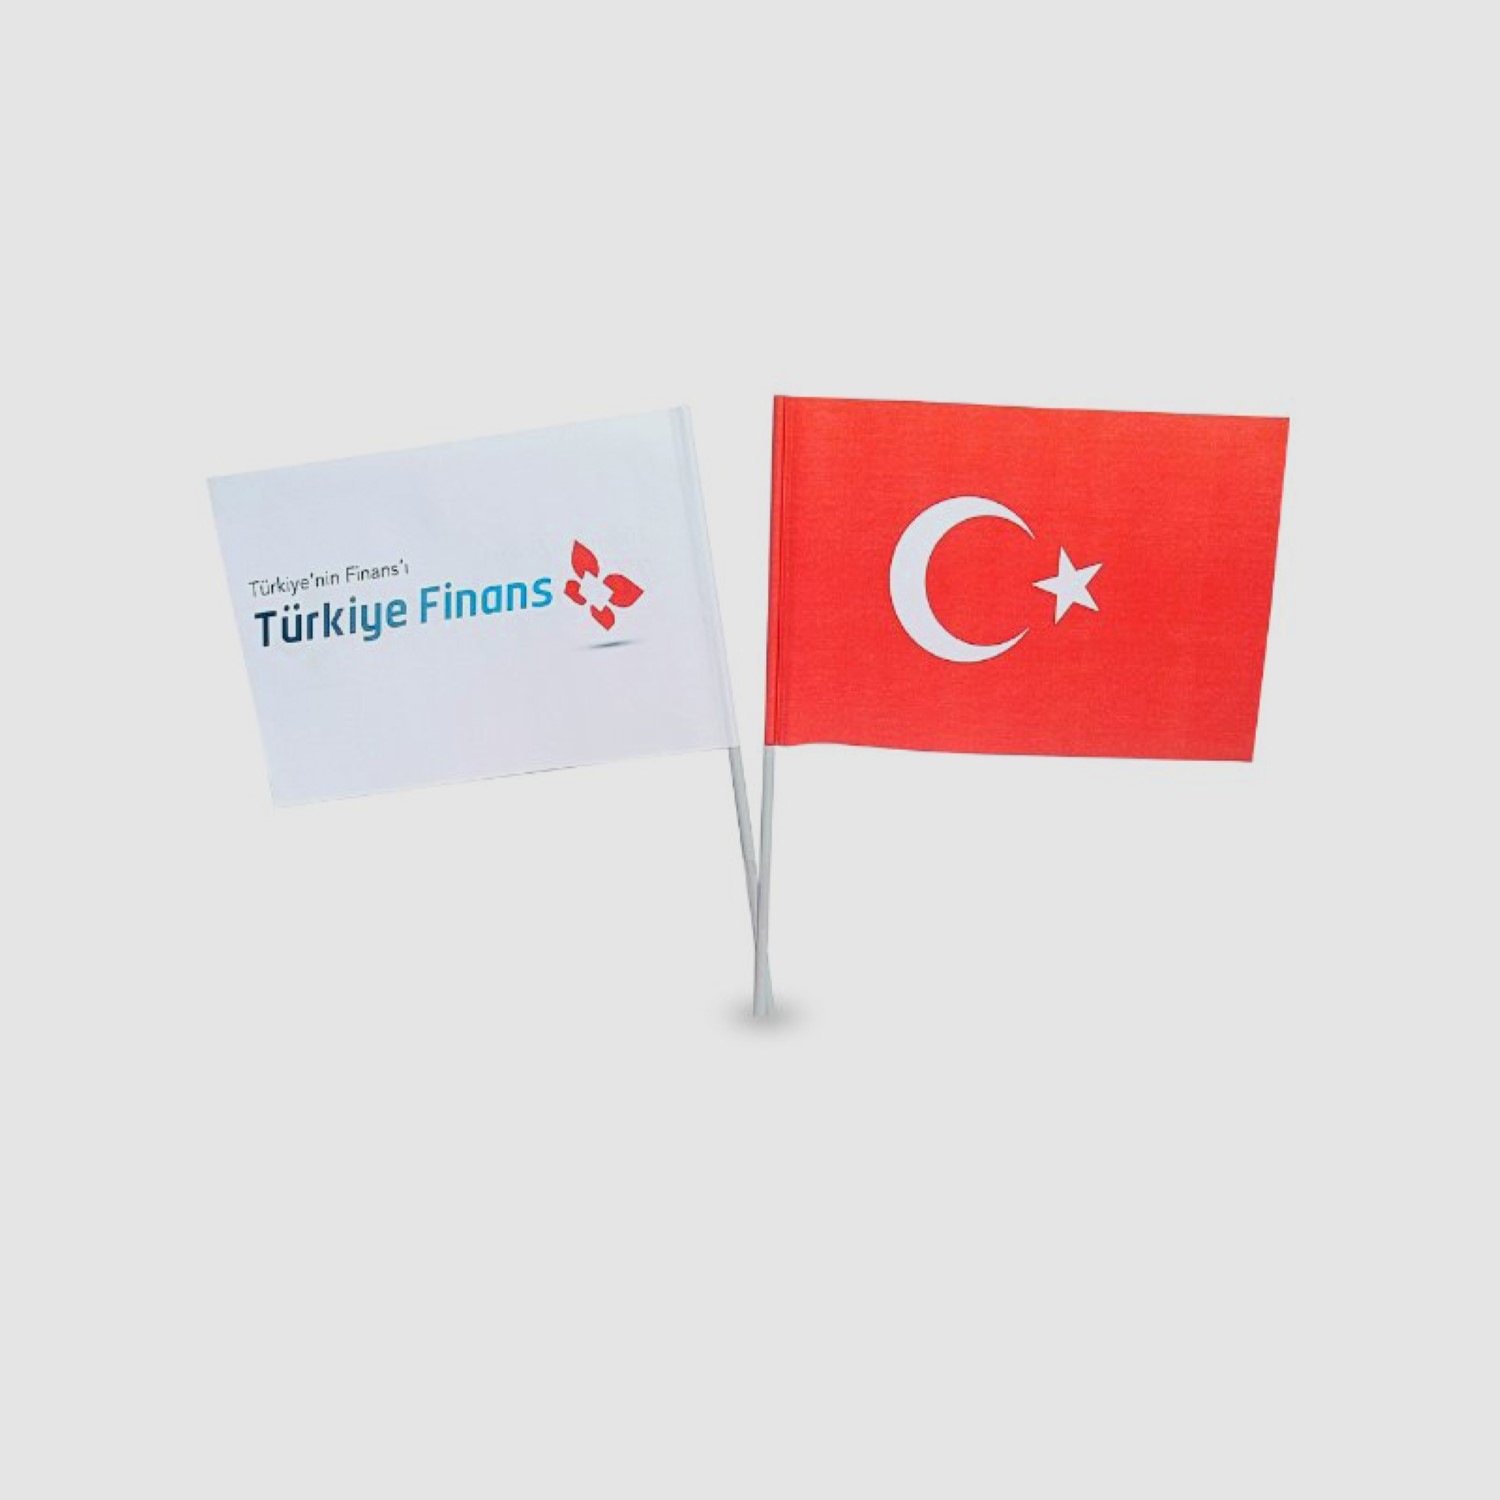 Firmaların organizasyonları için tanıtım amaçlı üretilen kağıt bayraklar